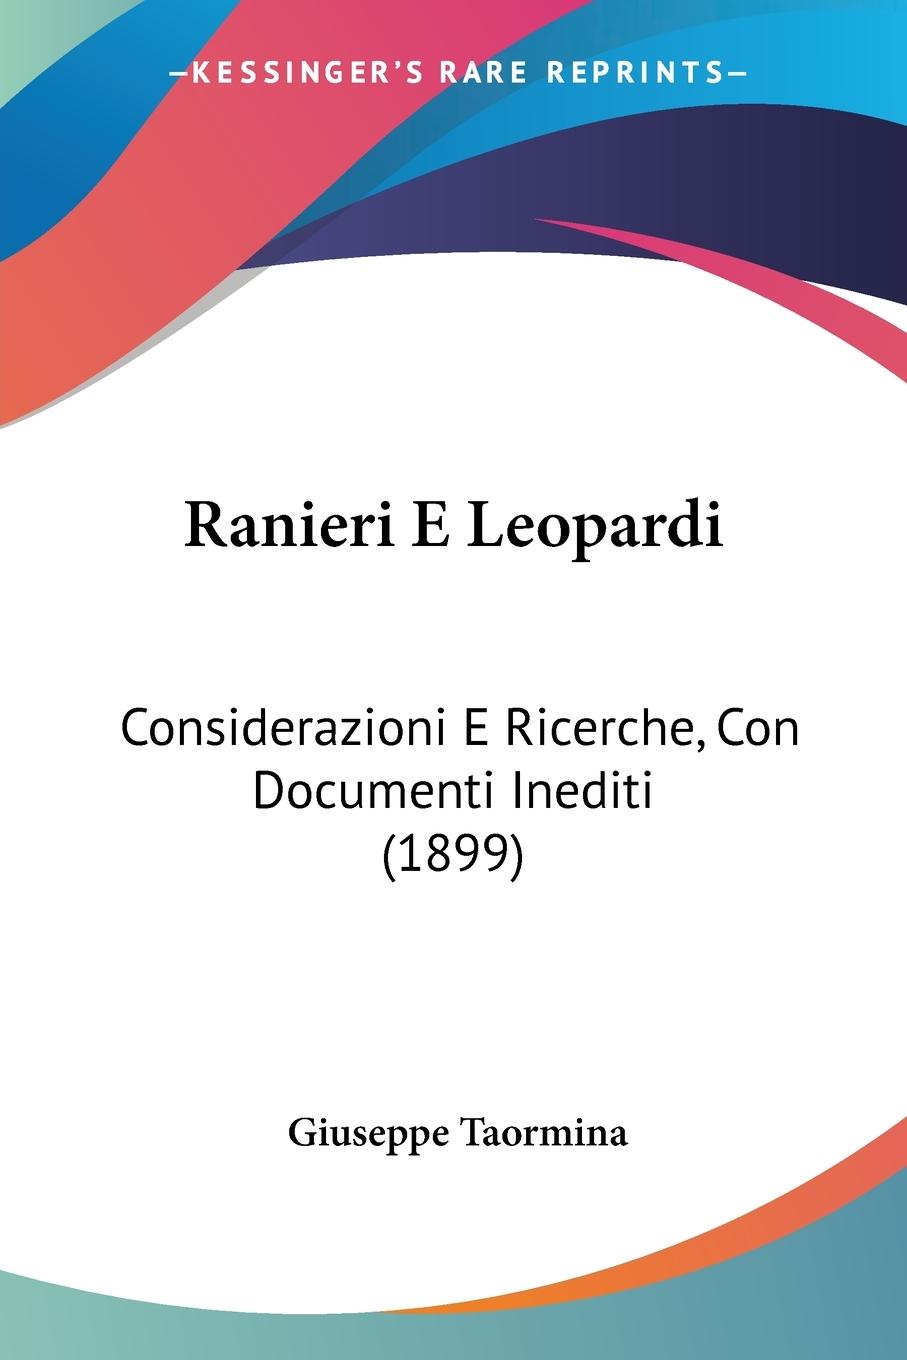 Ranieri E Leopardi - Taormina, Giuseppe